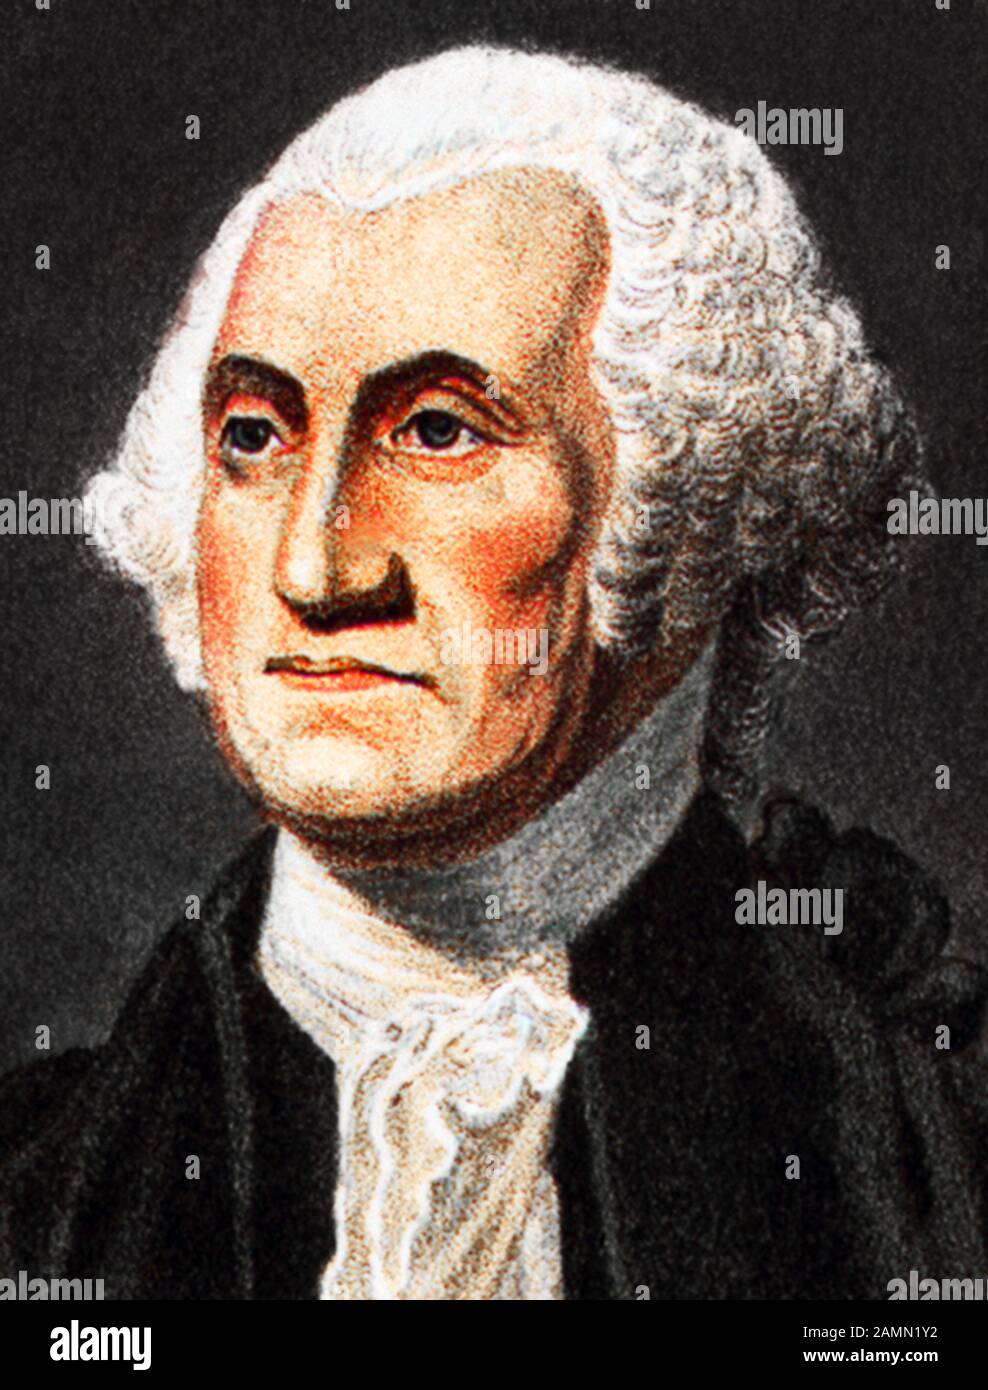 Portrait vintage de George Washington (1732 - 1799) – Commandant de l'Armée continentale dans la guerre révolutionnaire américaine / Guerre d'indépendance (1775 - 1783) et le premier Président des États-Unis (1789 - 1797). Détail d'un imprimé vers 1861 par Francis Bouclet. Banque D'Images